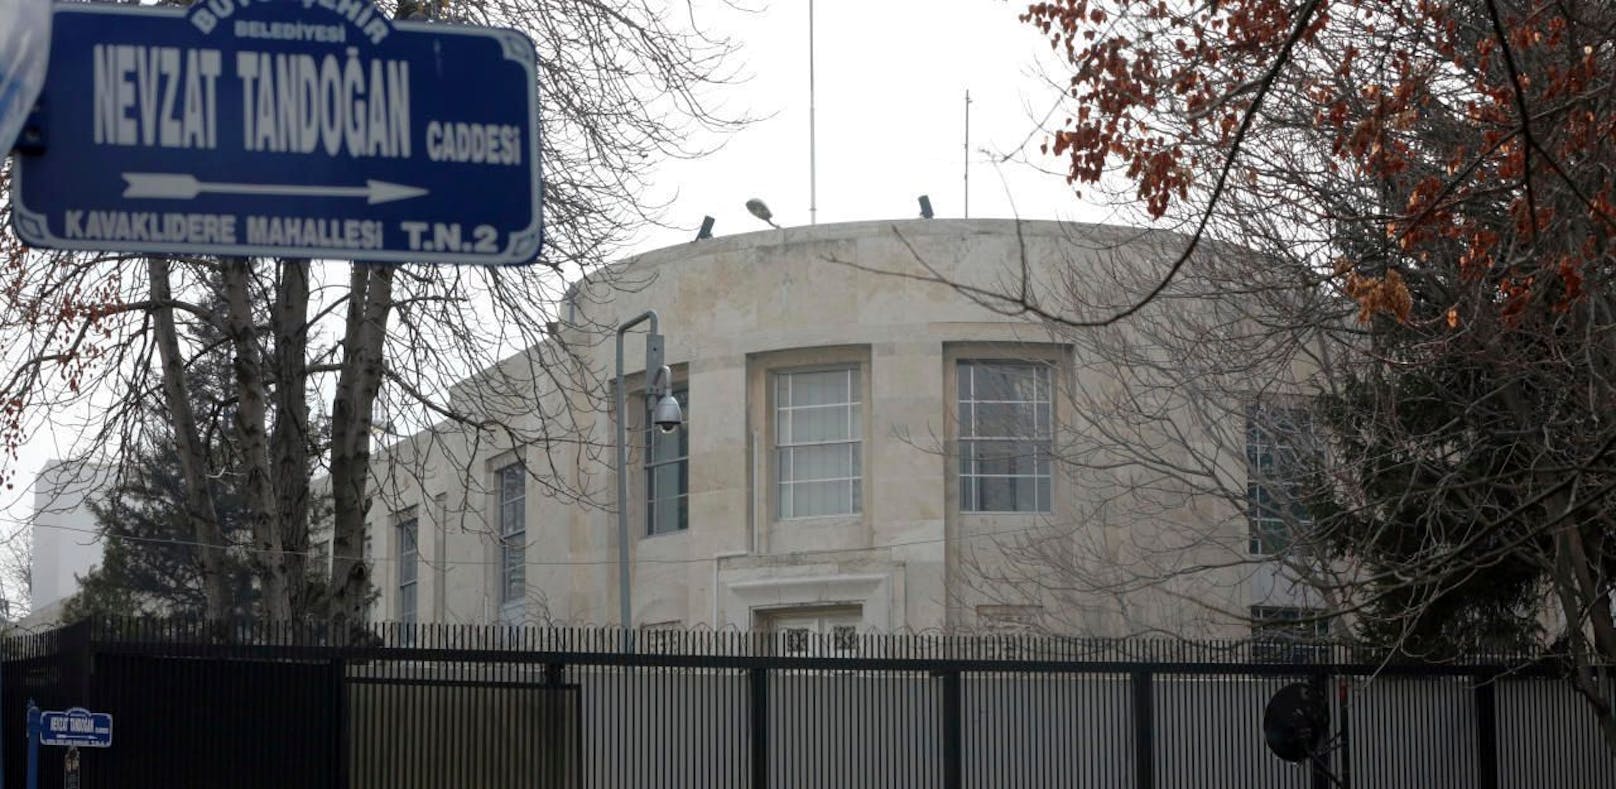 Unbekannte schossen auf US-Botschaft in Ankara